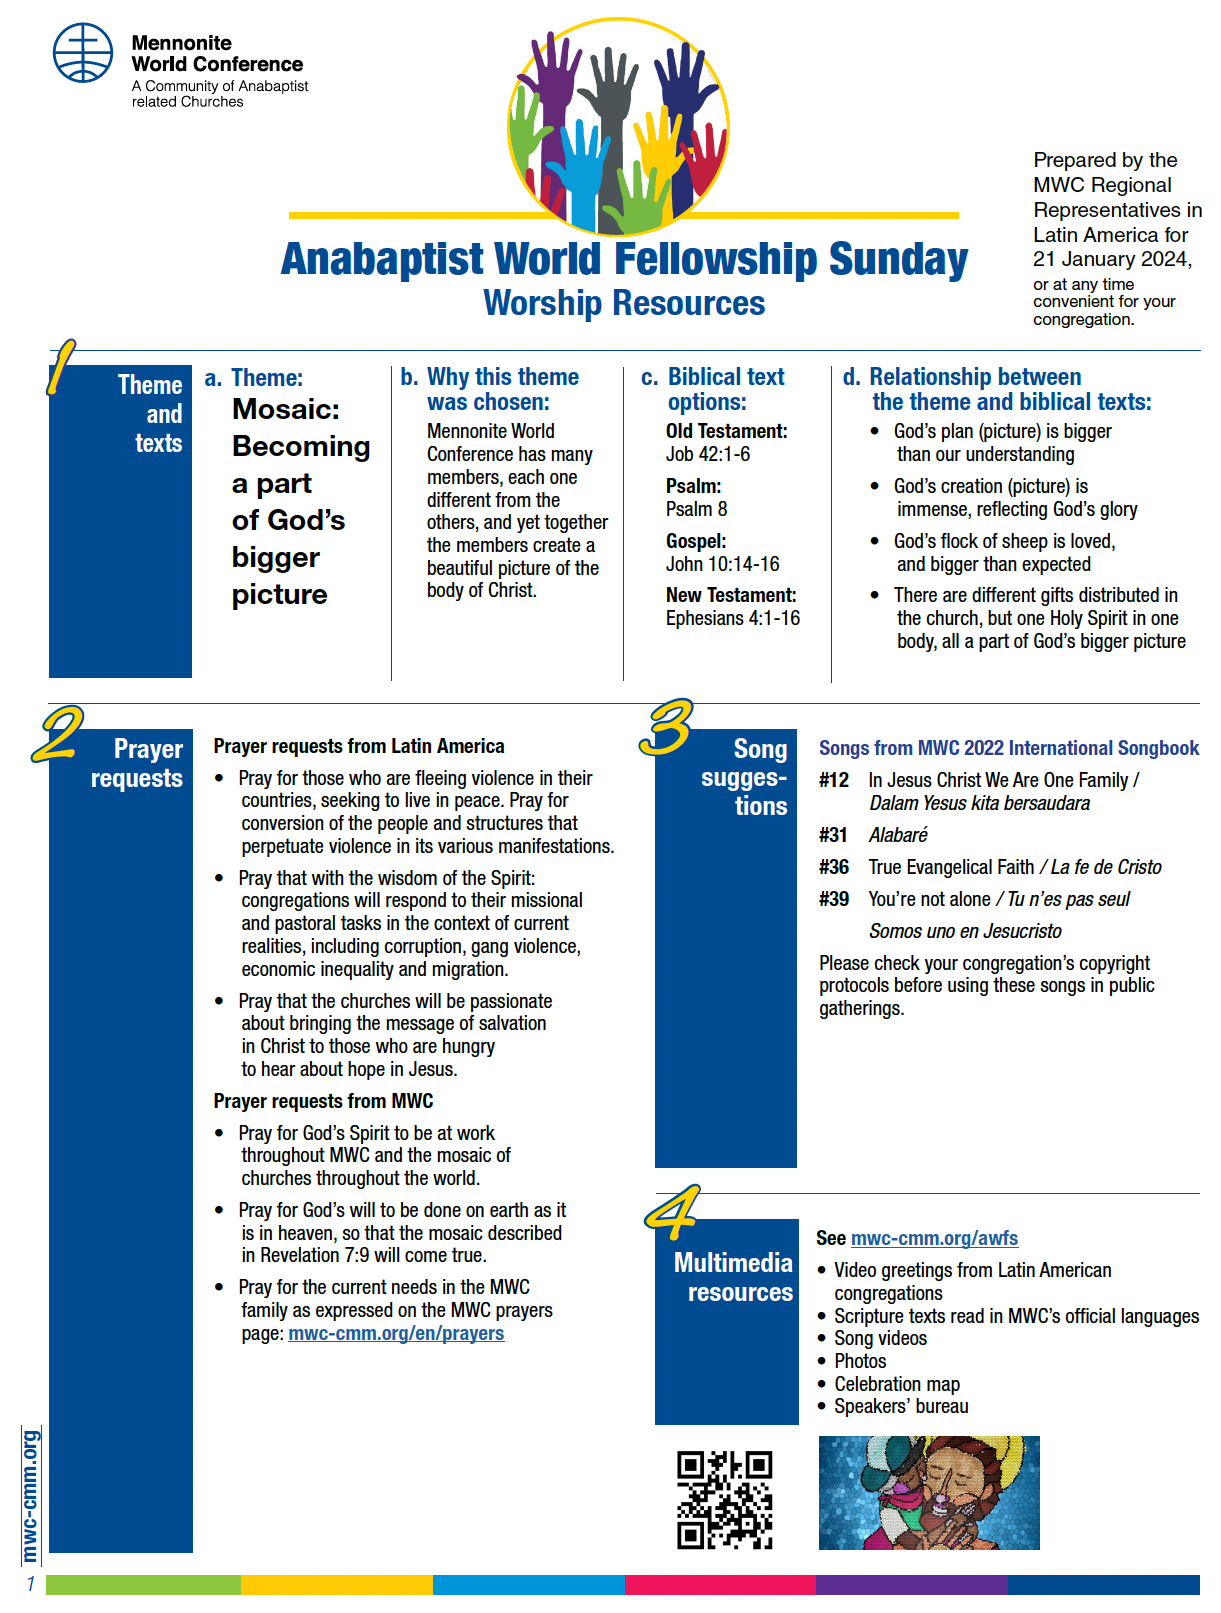 Anabaptist World Fellowship Sunday 2024